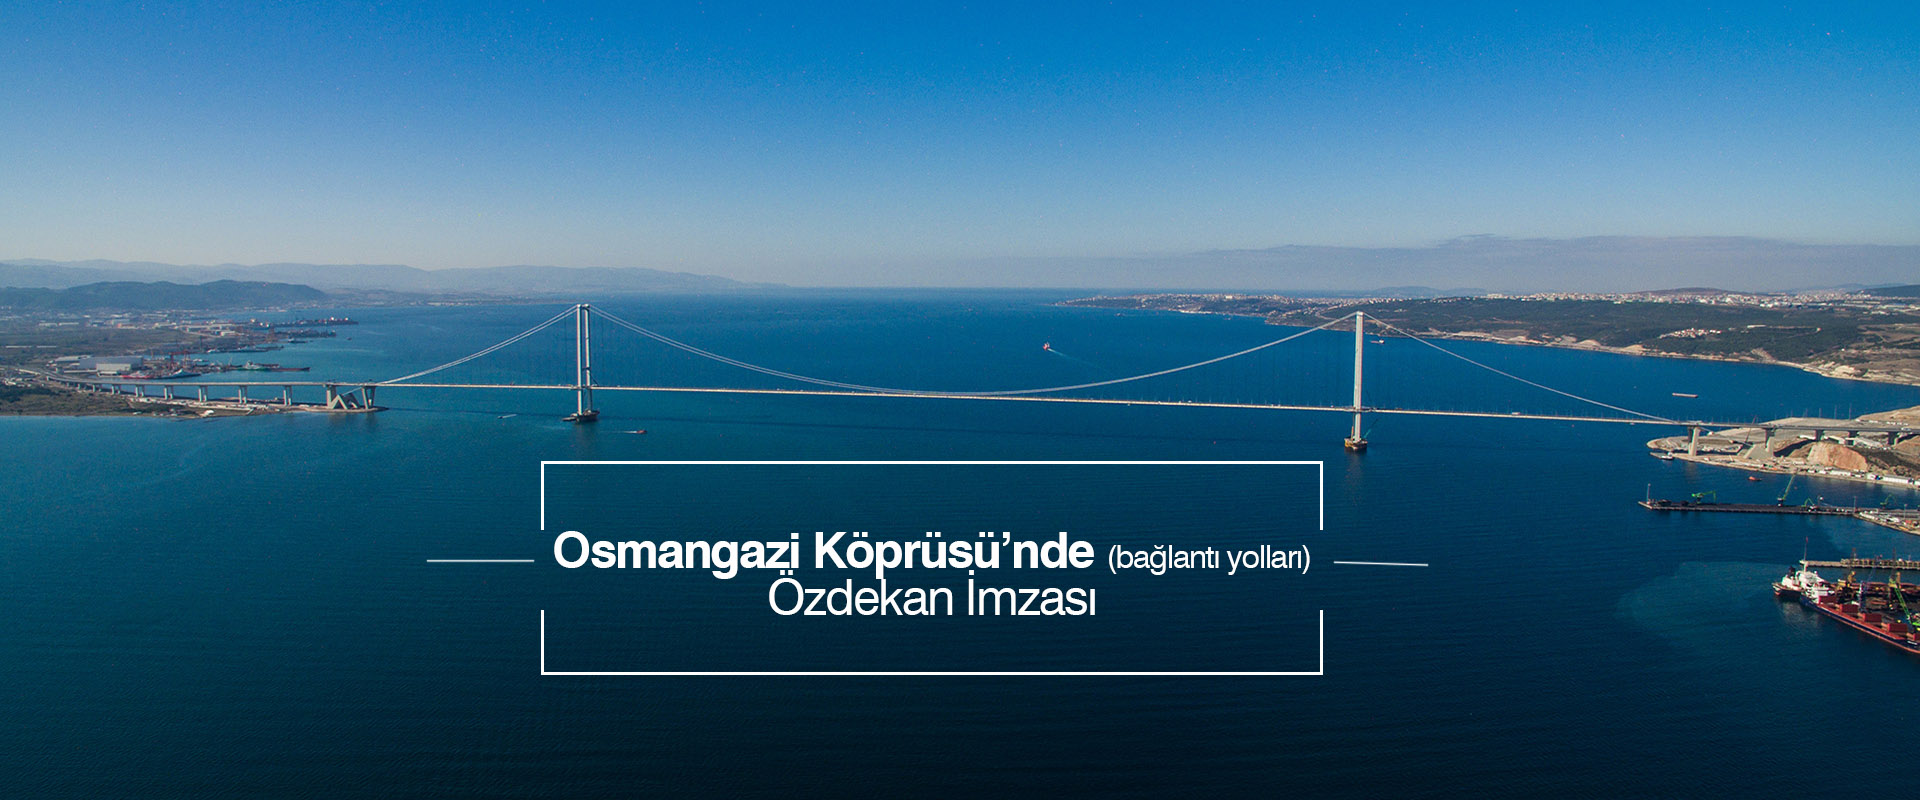 Osmangazi Köprüsü Bağlantı Yolları